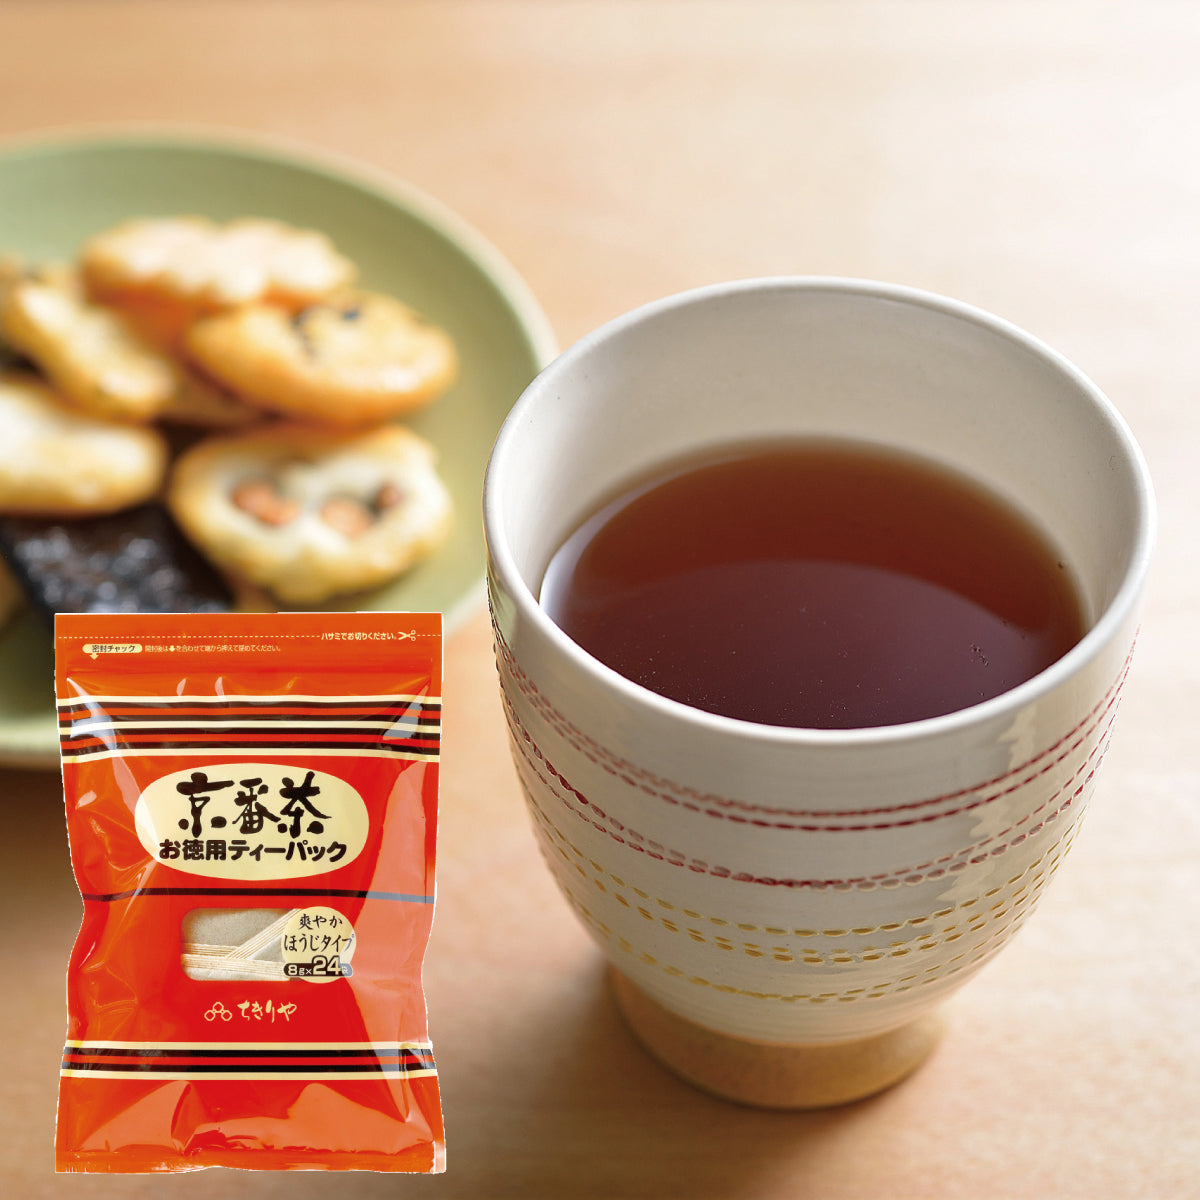 Kyobancha (roasted Japanese green tea) - 24 Tea bags